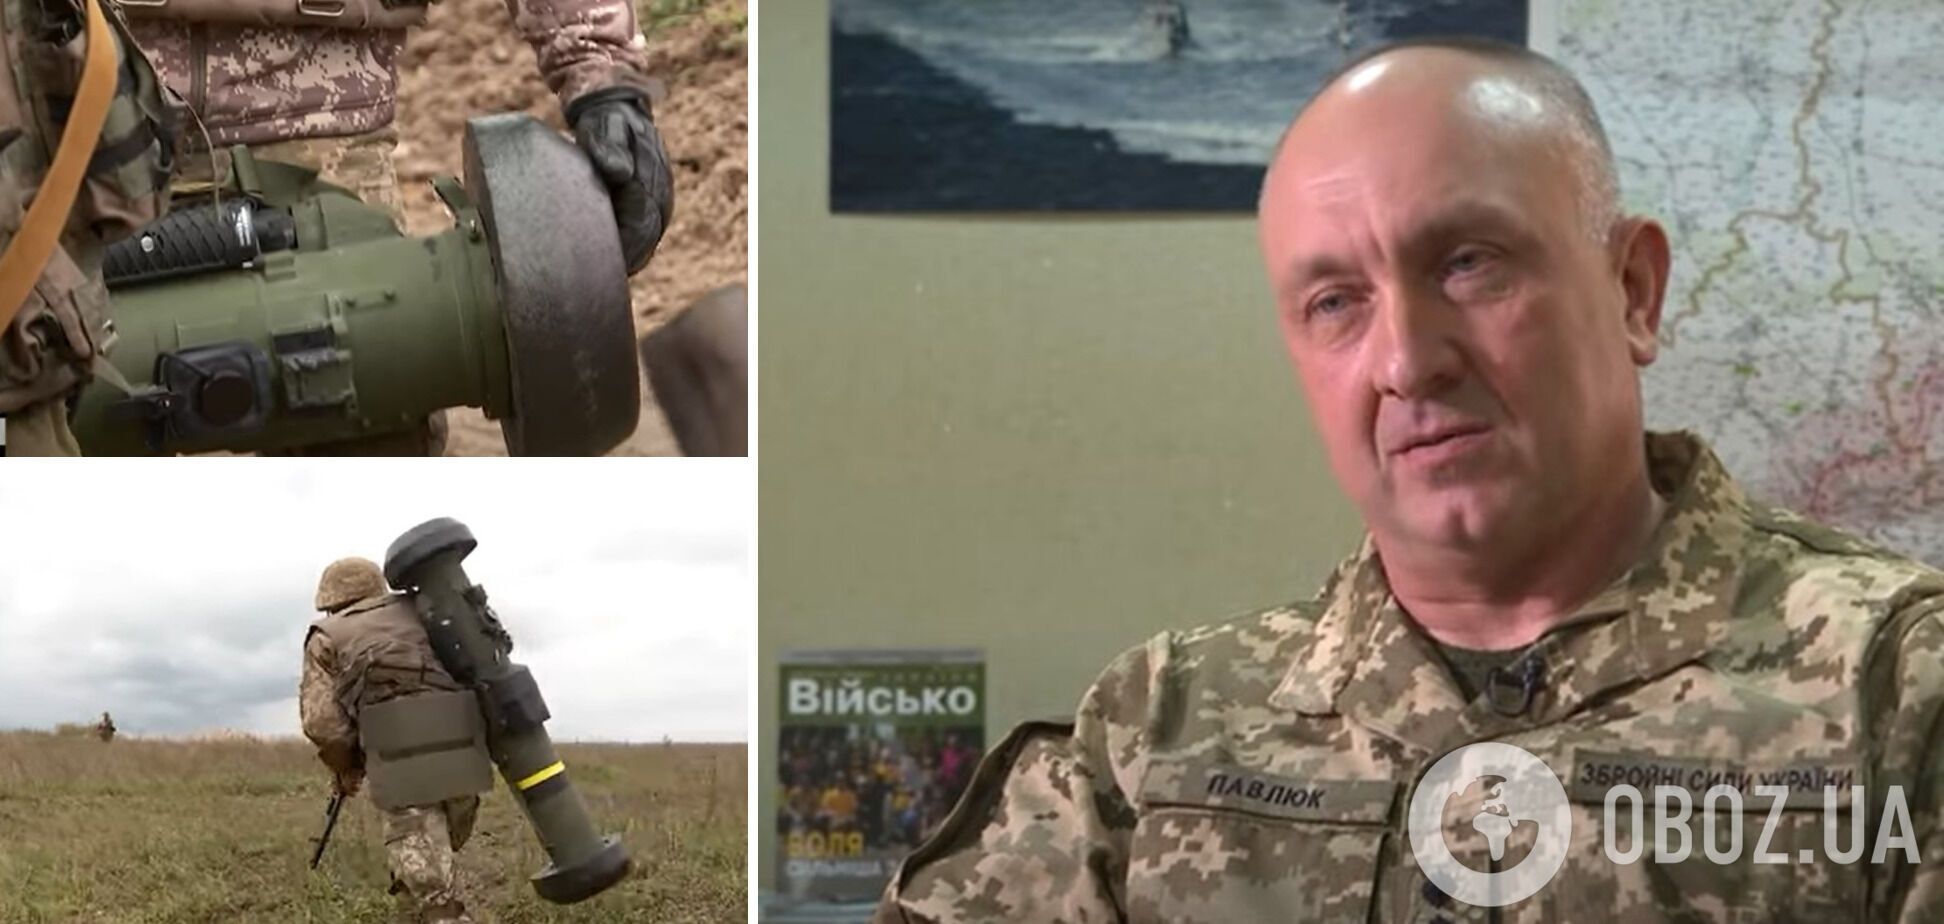 ВСУ не используют Javelin на Донбассе, – Александр Павлюк